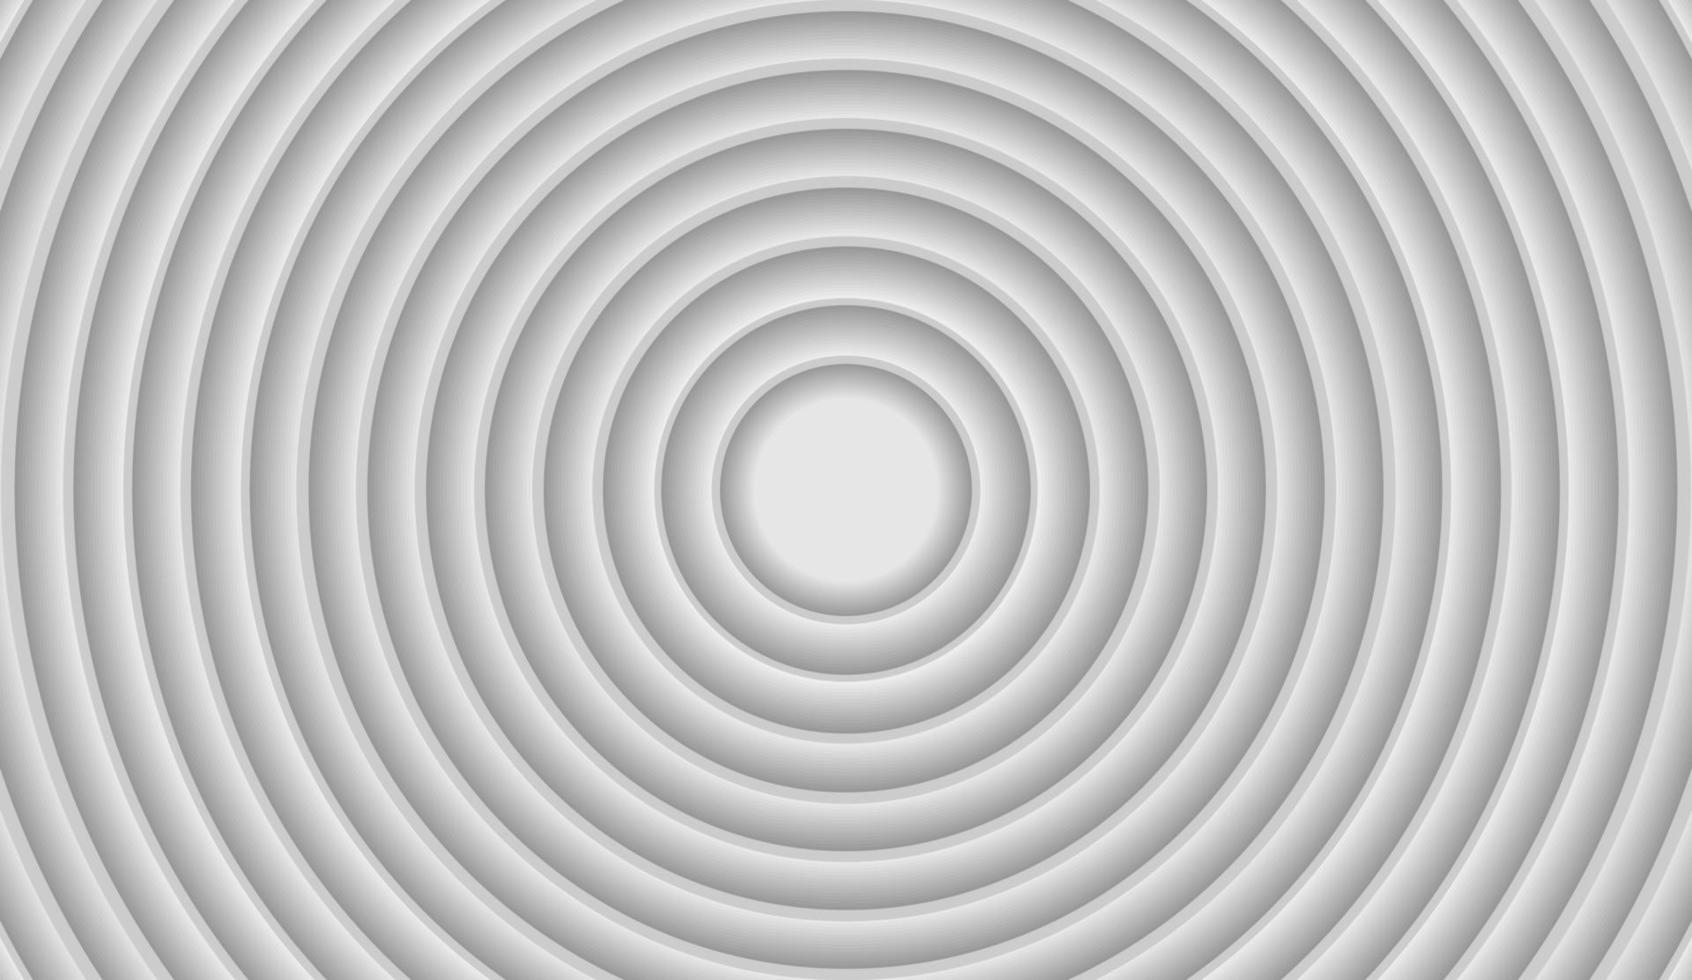 sfondo geometrico astratto, forma di cerchi. sfondo bianco e grigio. illustrazione vettoriale